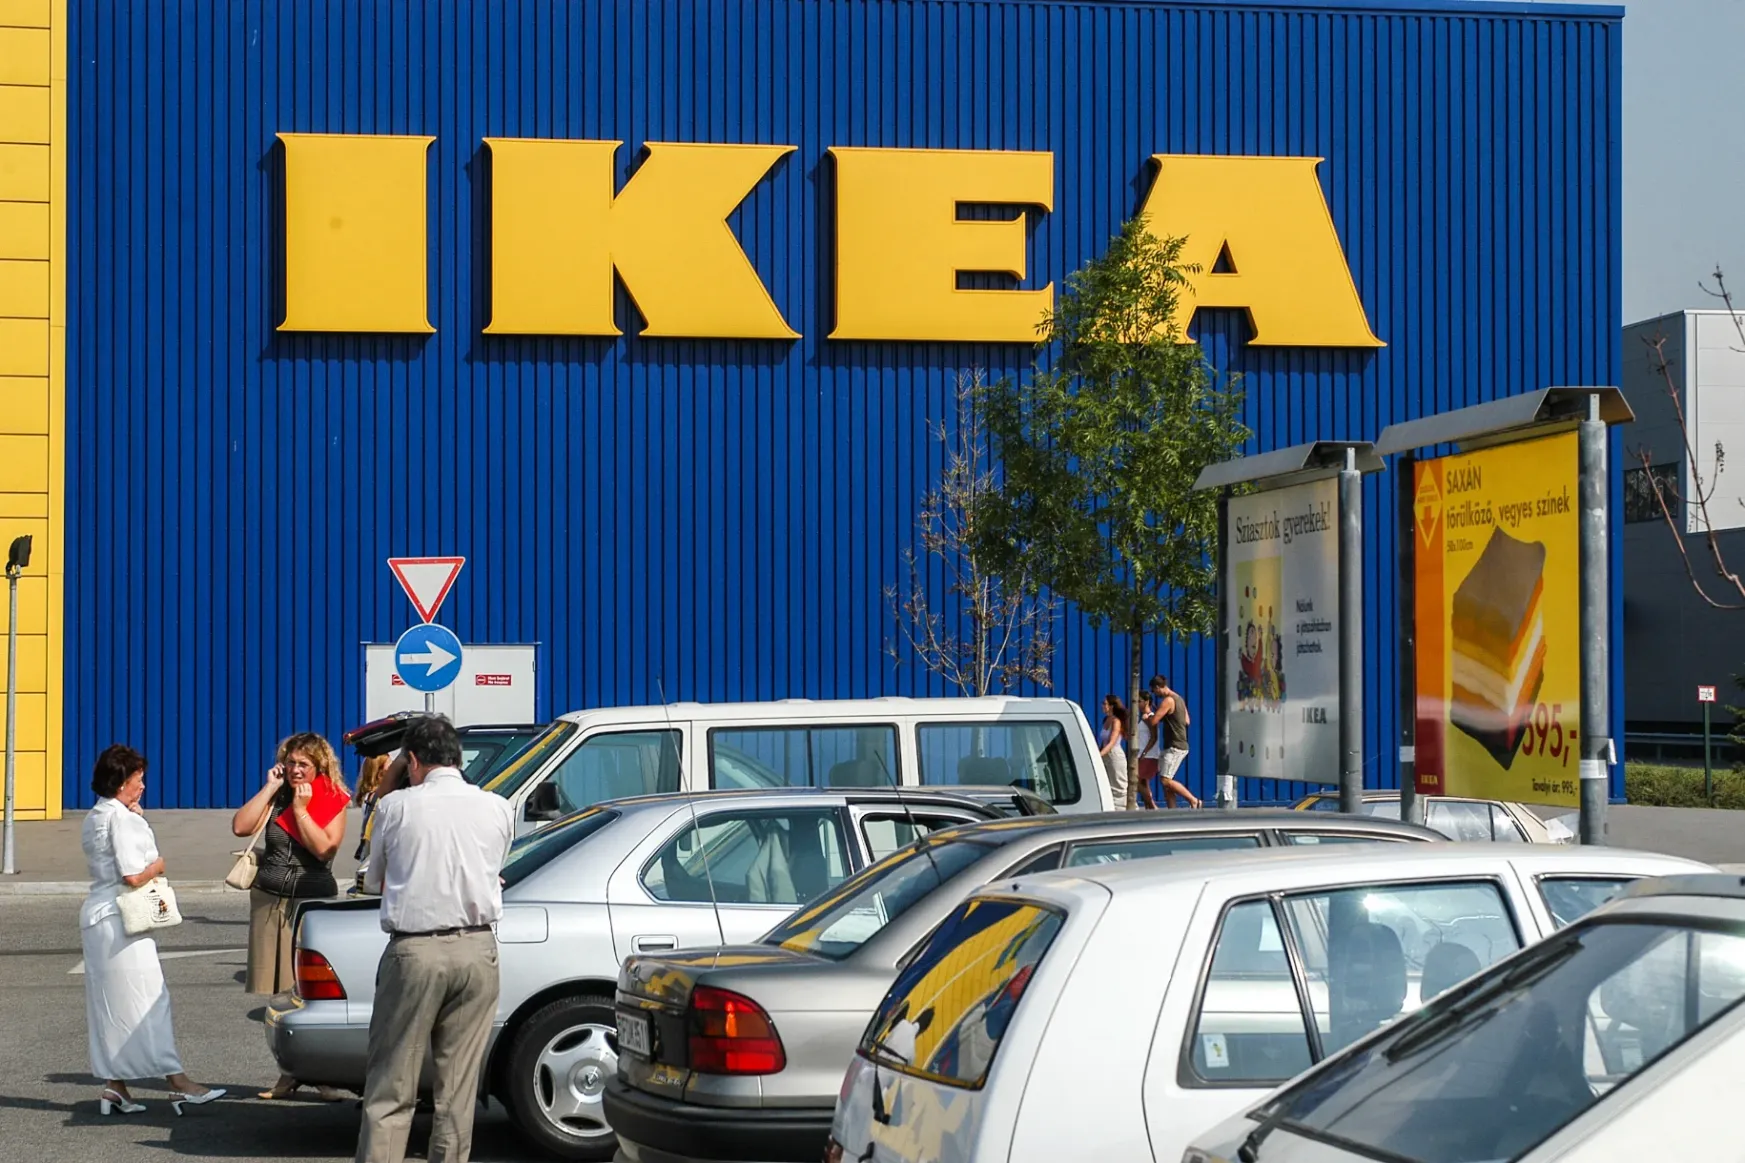 Augusztustól rövidebb ideig tart nyitva az IKEA